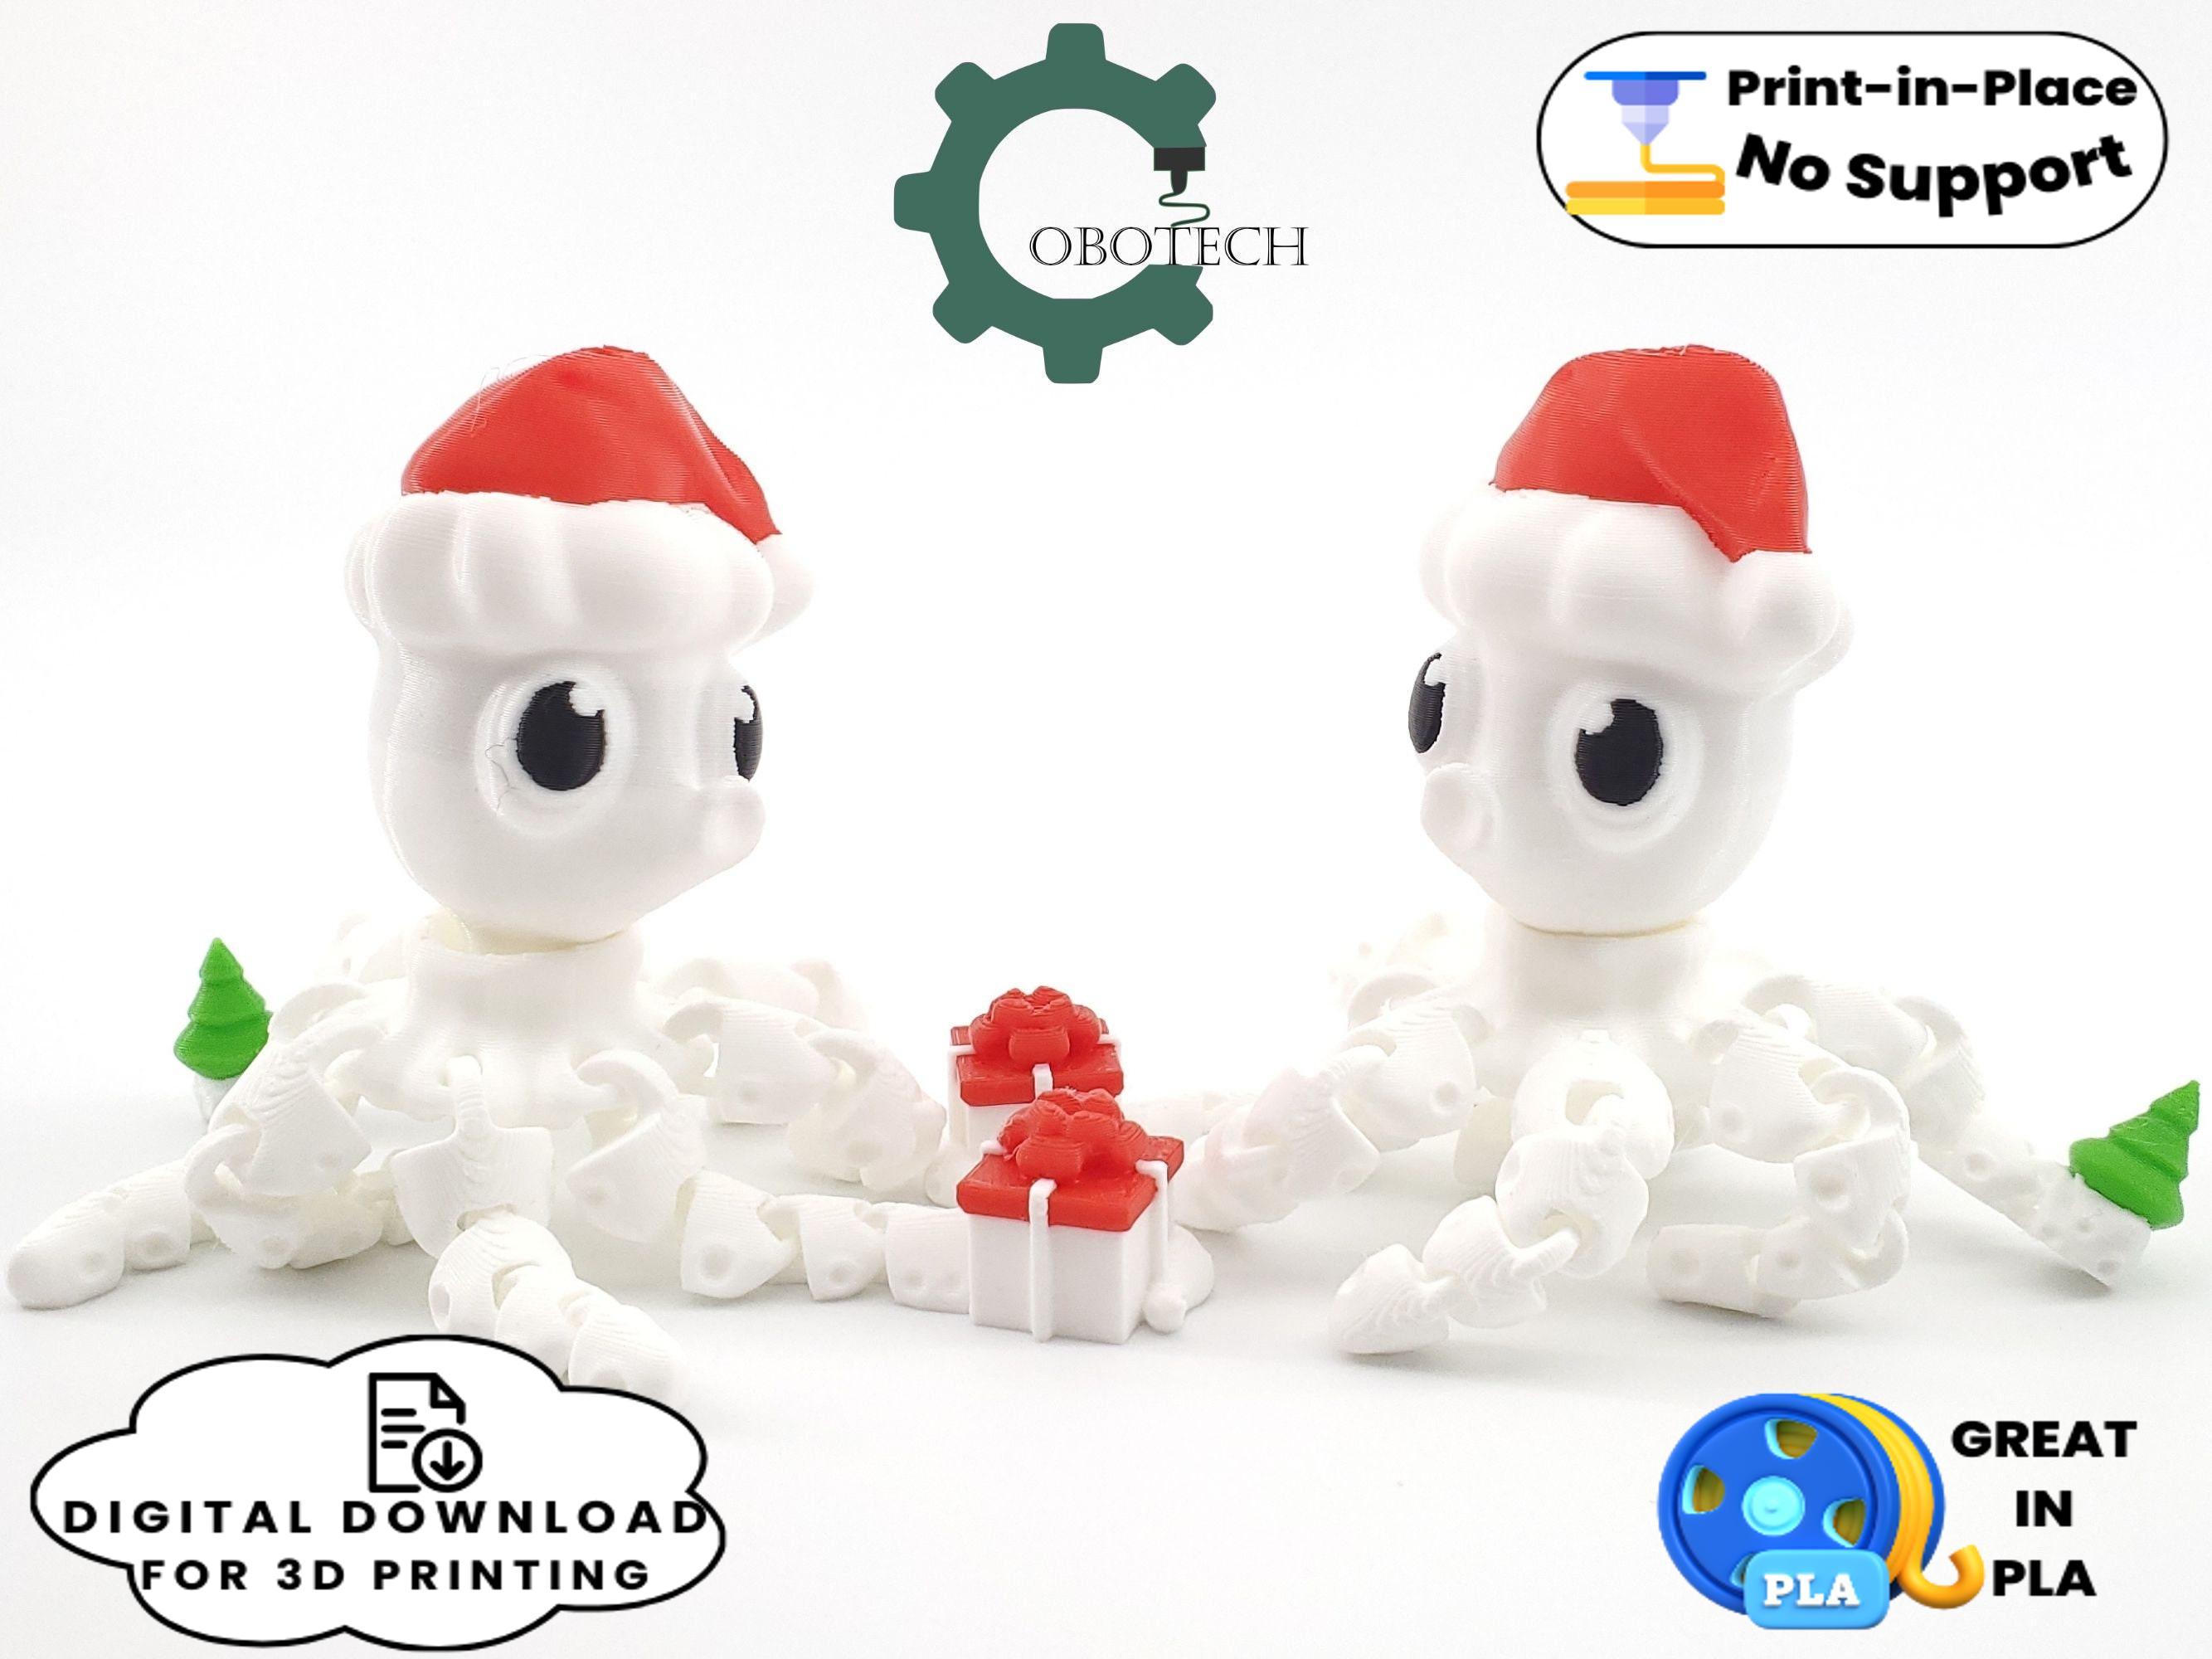 Cobotech Articulated Christmas Octopus 3d model